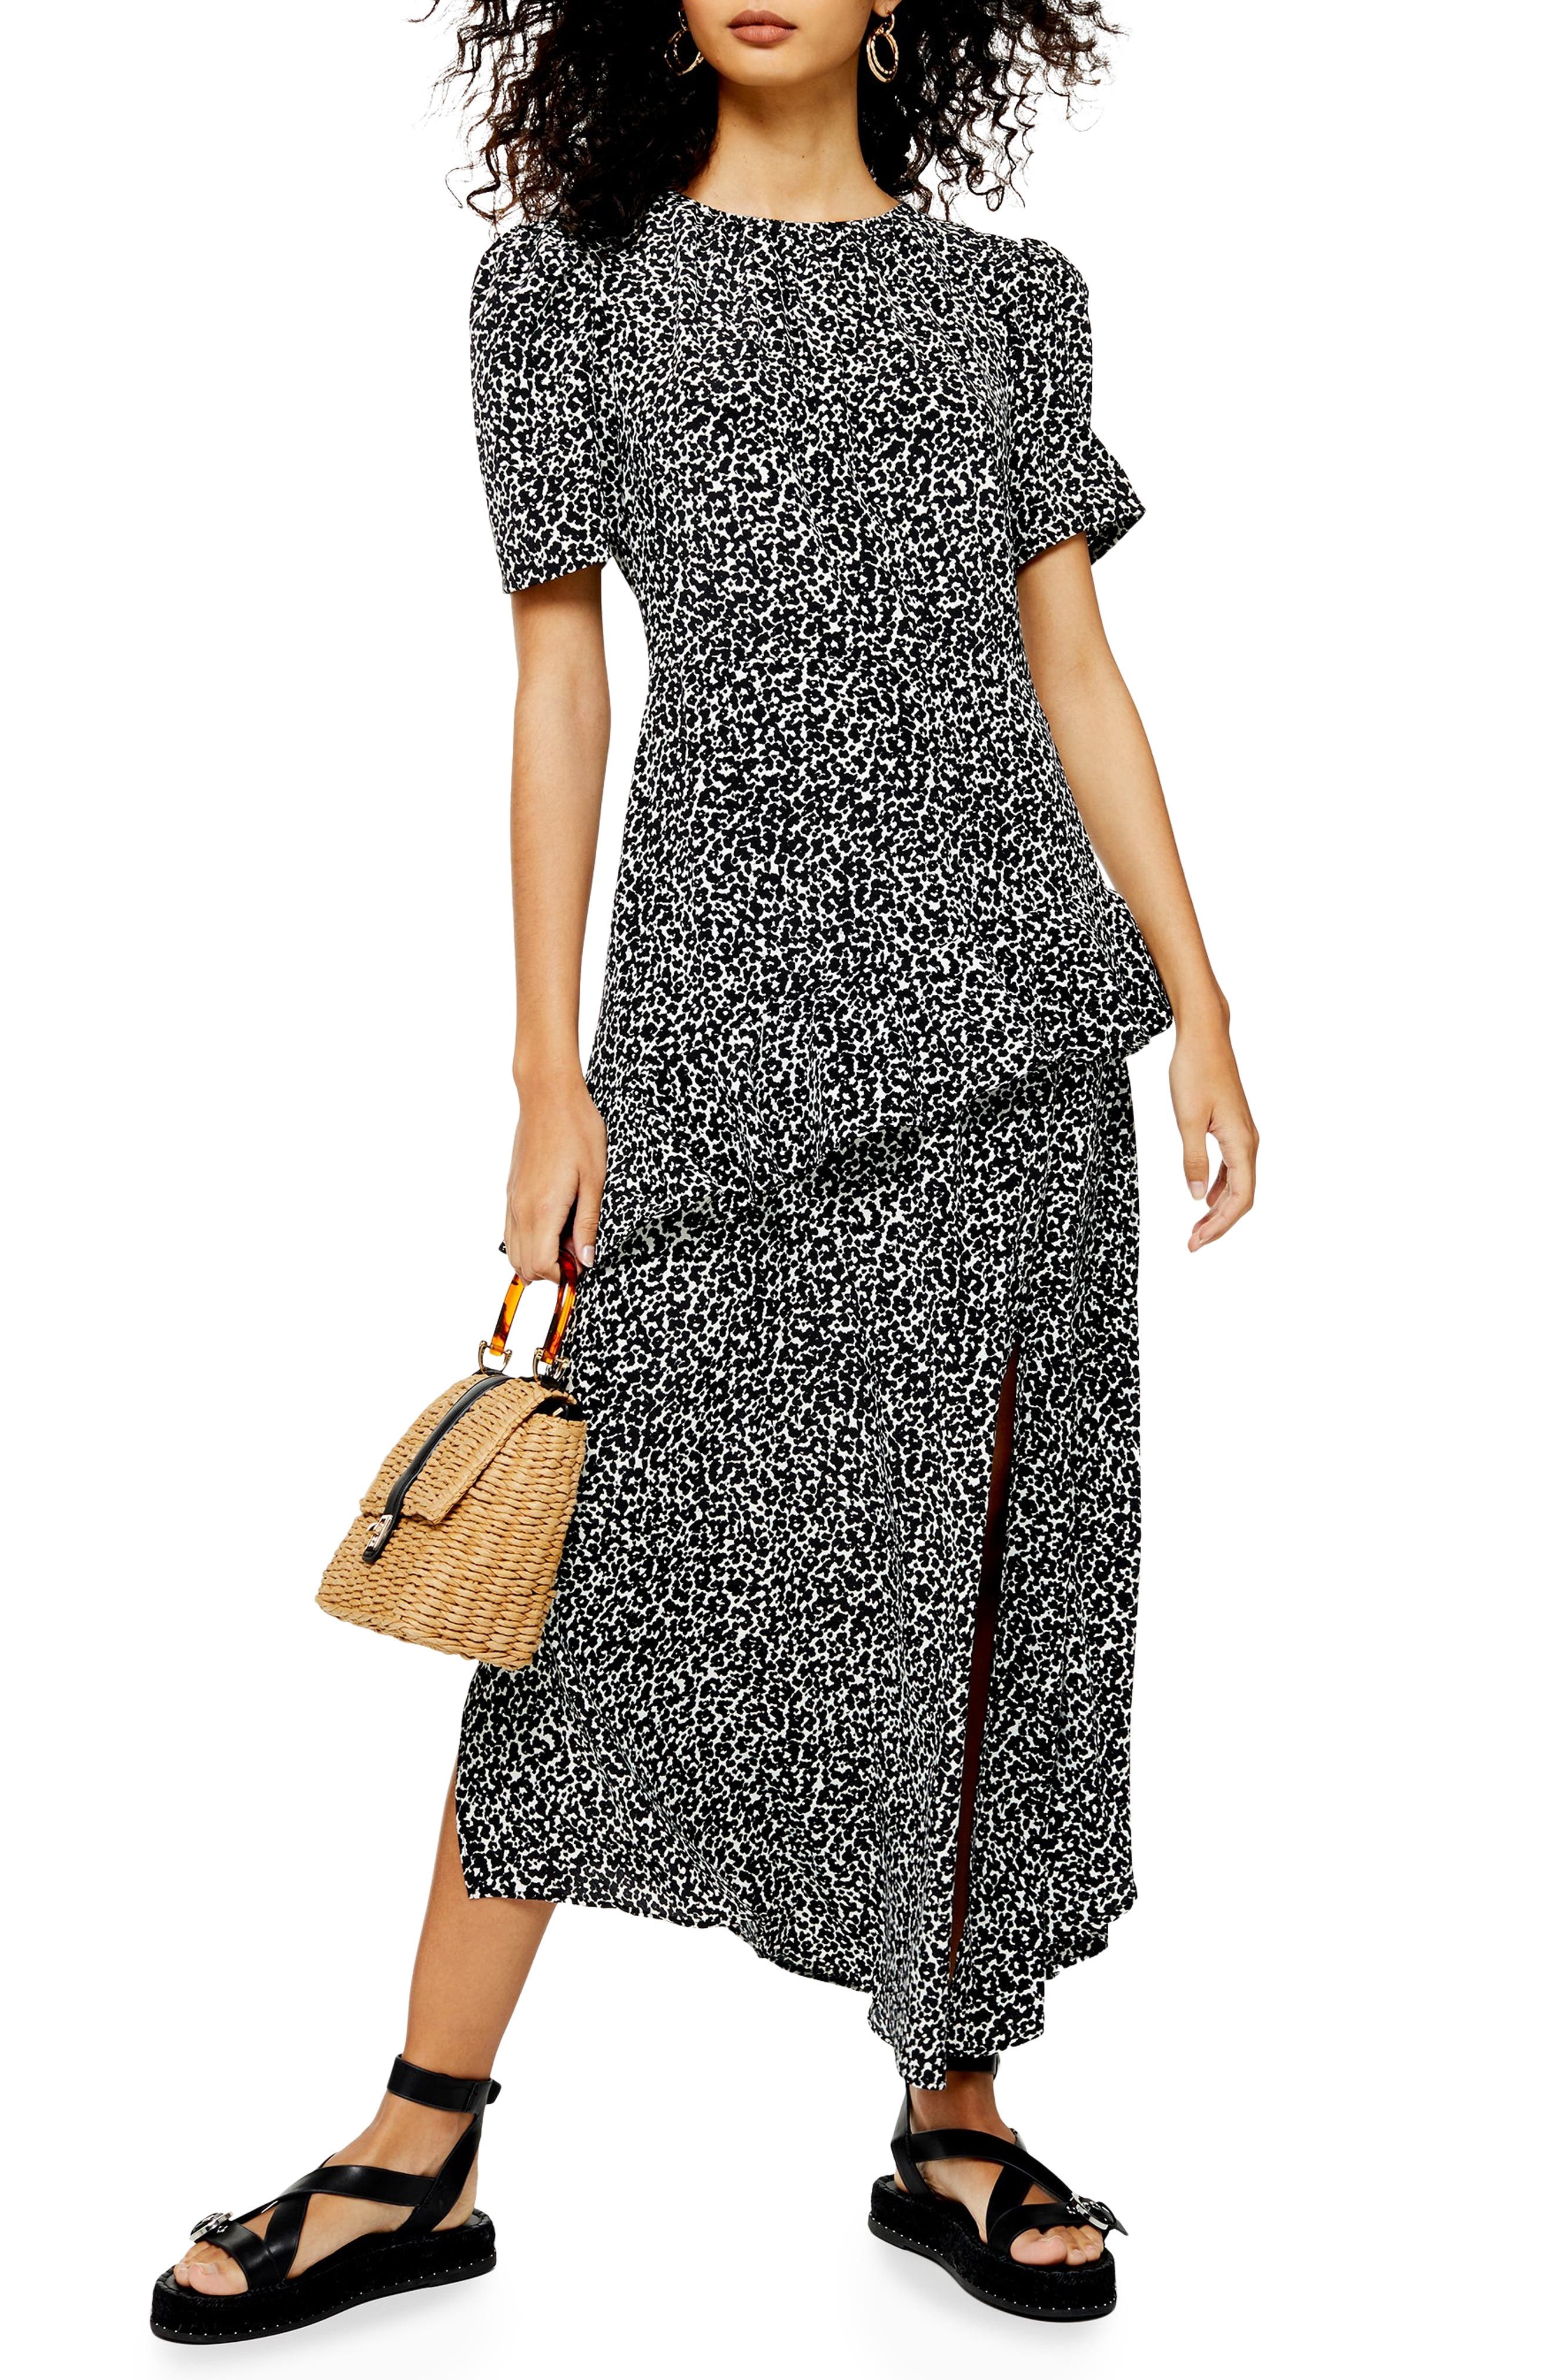 leopard print ruffle dress